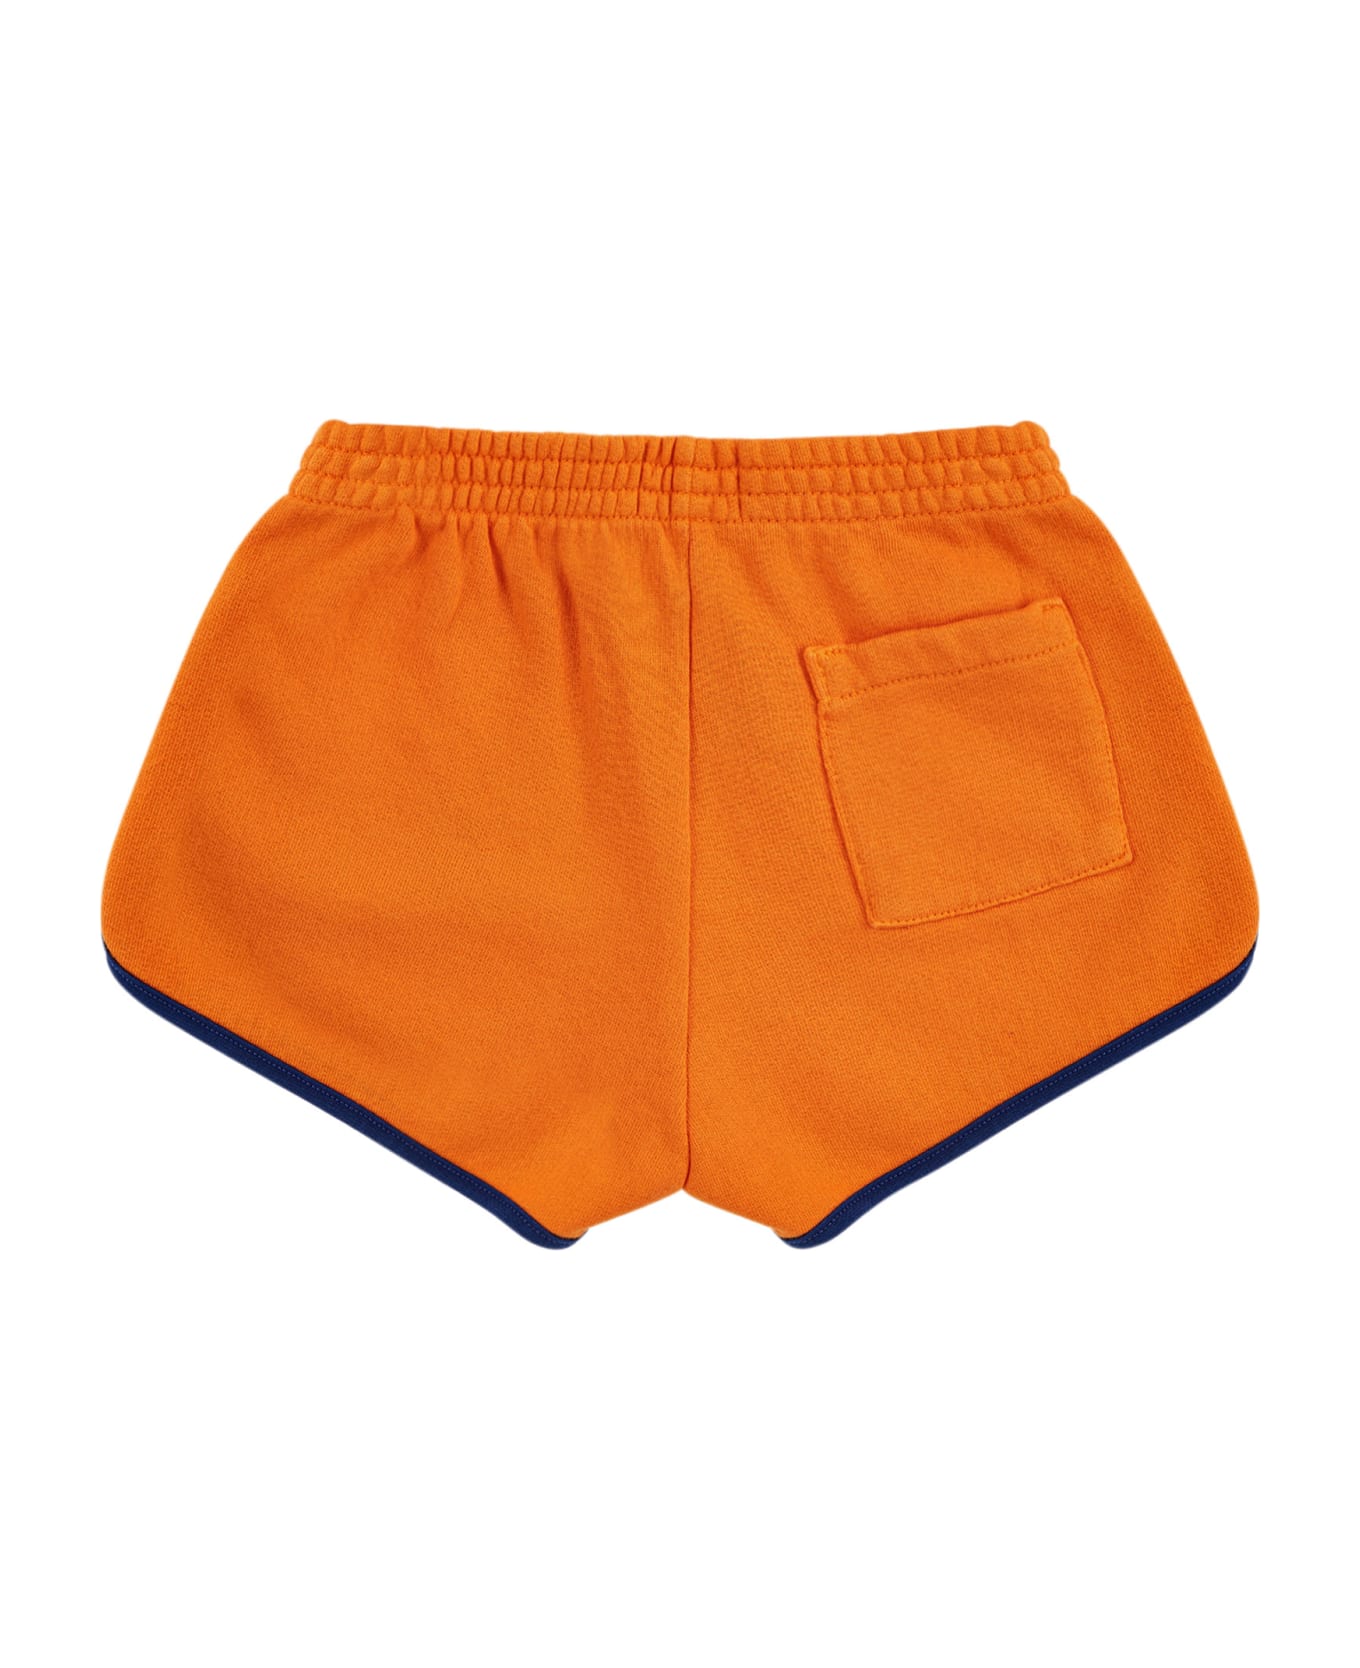 Bobo Choses Orange Shorts For Kids With Logo - Orange ボトムス